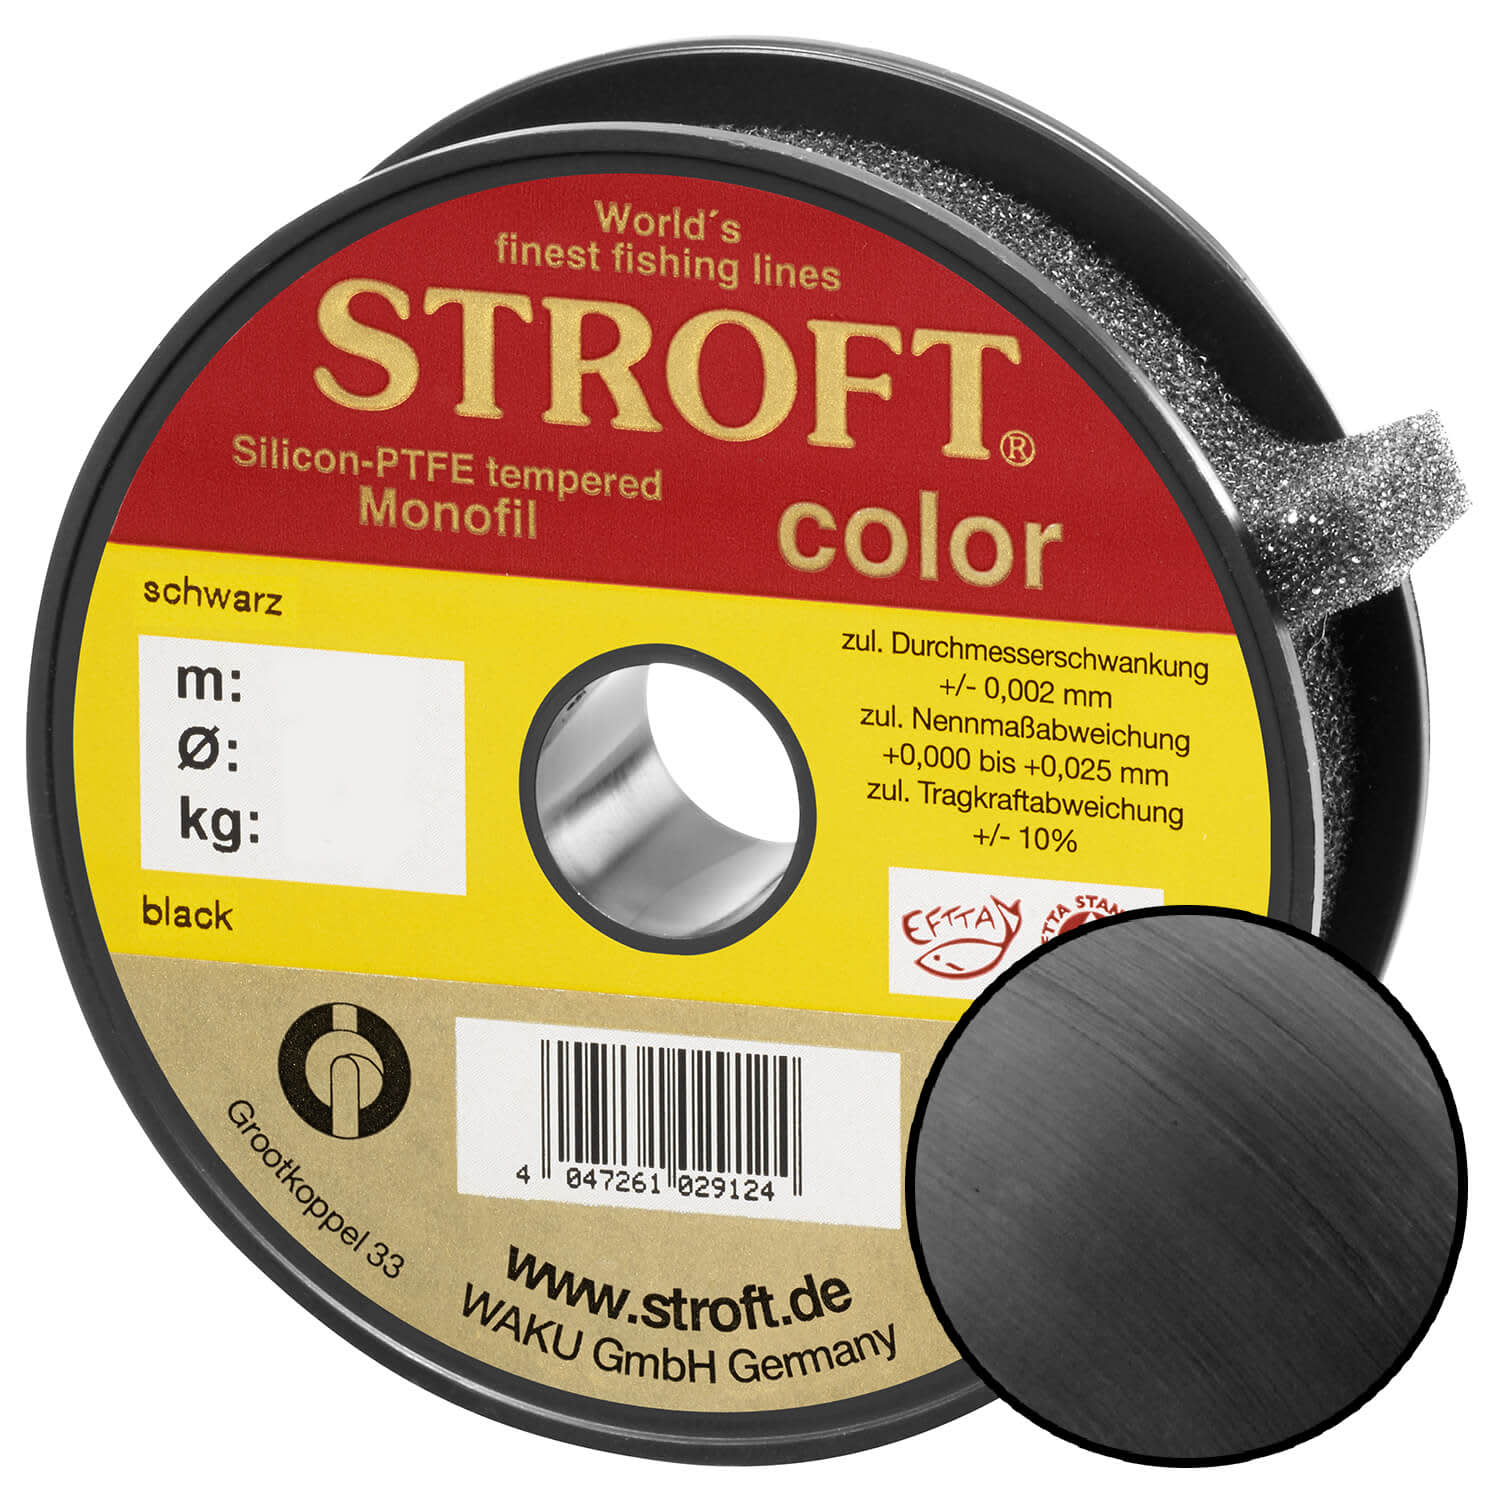 STROFT Color Monofilament Fishing Line Black 0,25mm 5,7kg